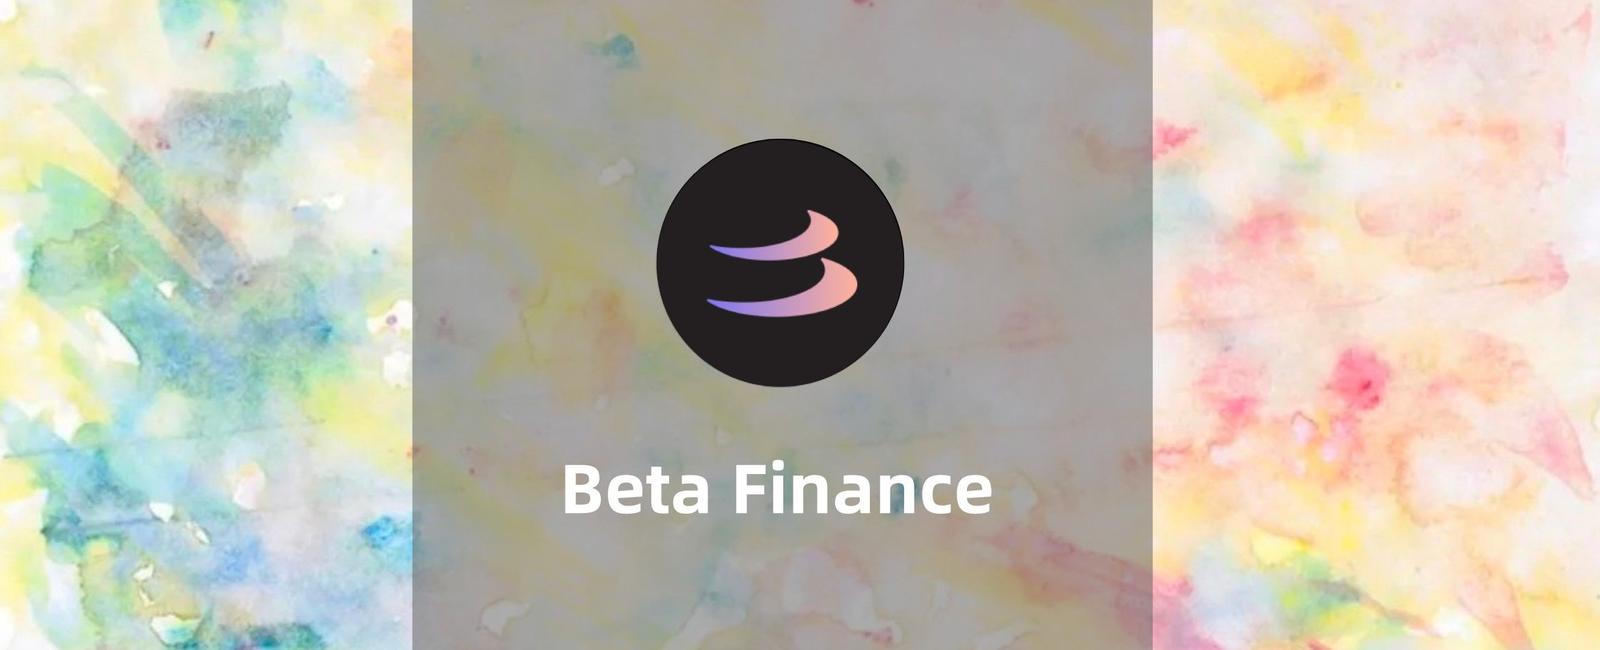 一文带你详细了解链上无许可货币市场Beta Finance